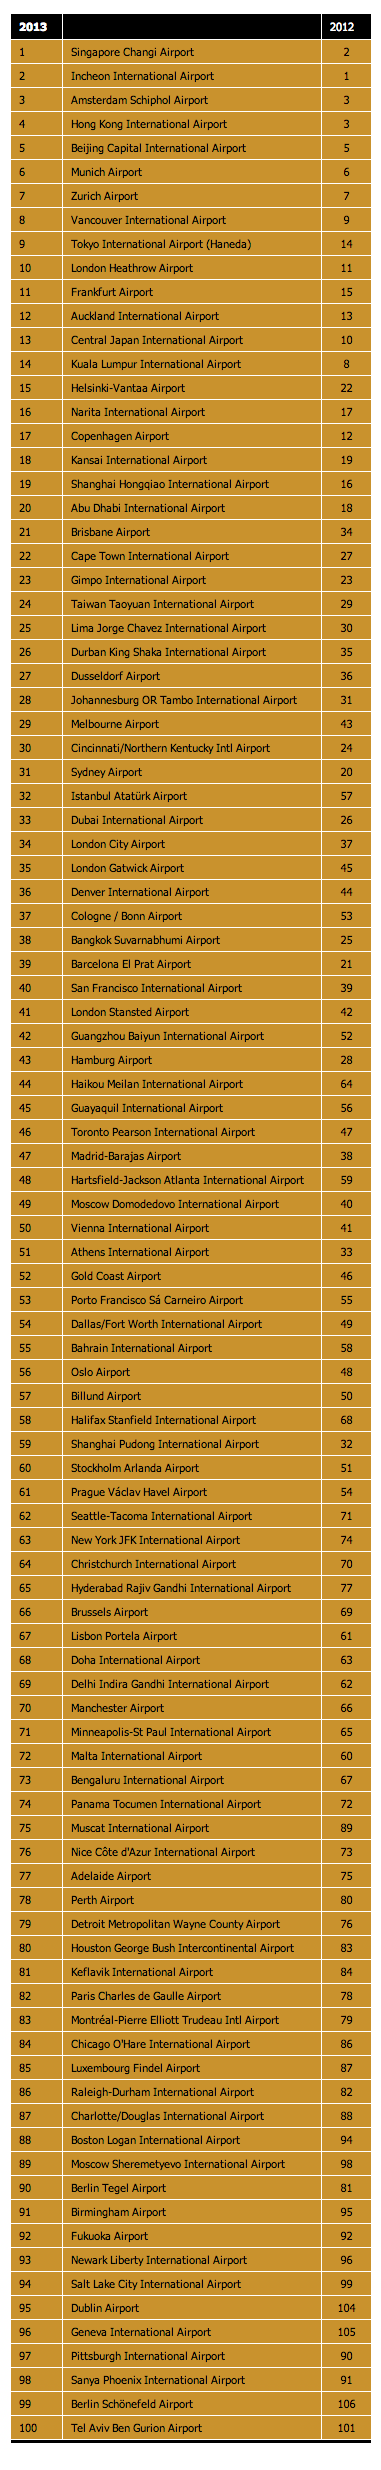 溫哥華國際機場被評為全北美最佳機場2013